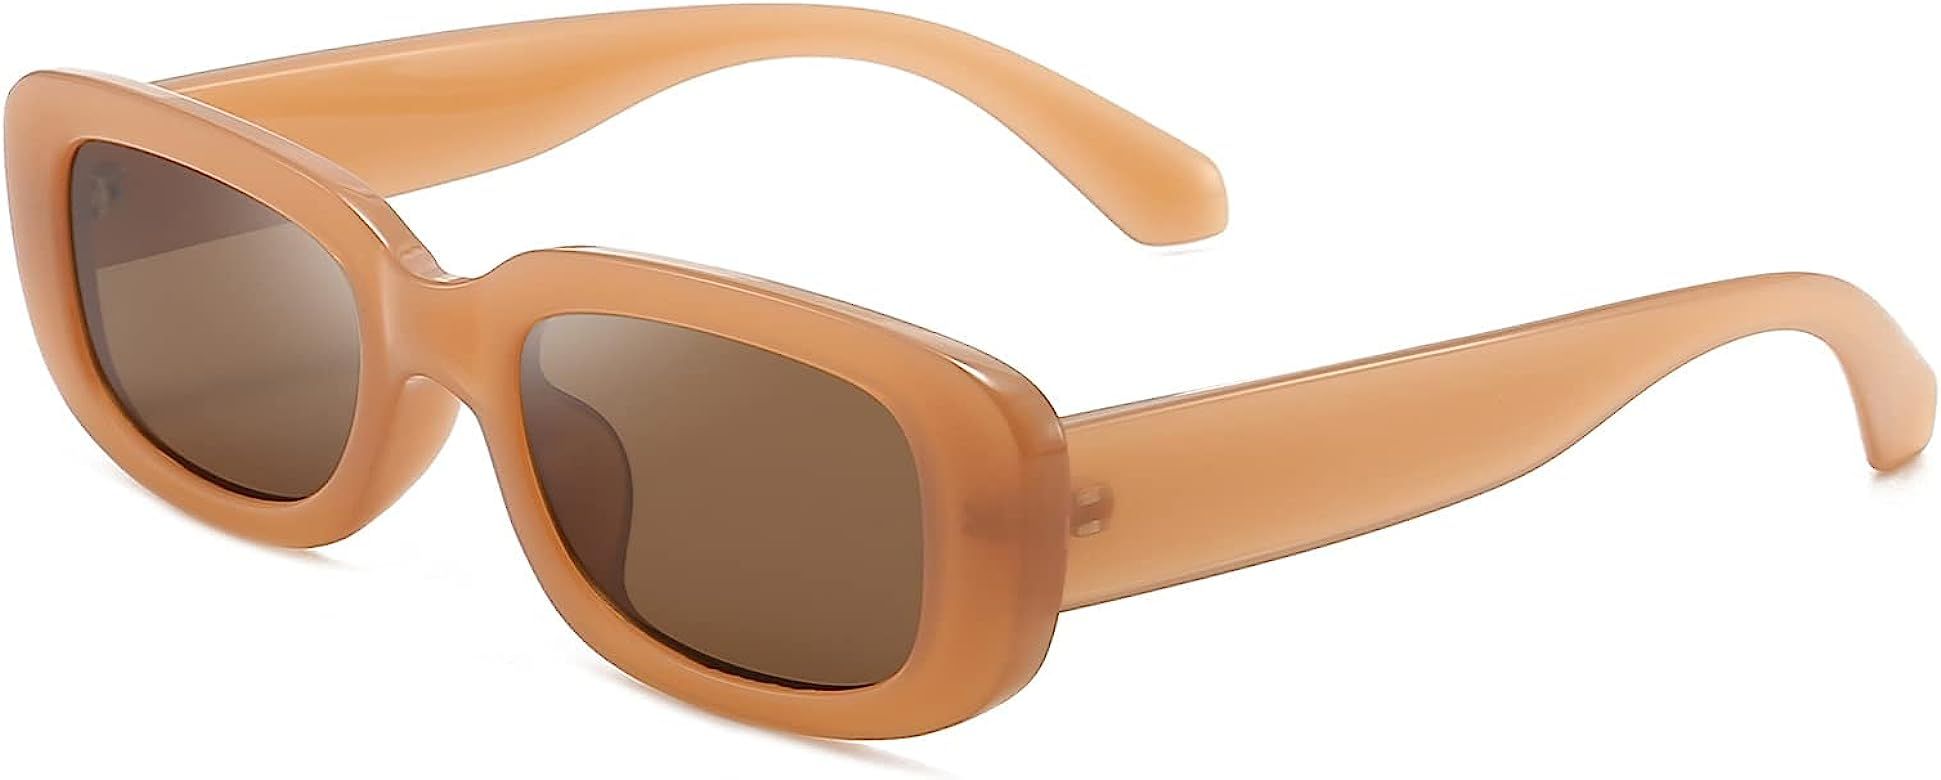 Vintage Rectangle Sunglasses Women Men UV400 Protection Fashion Square Frame Eyewear | Amazon (UK)